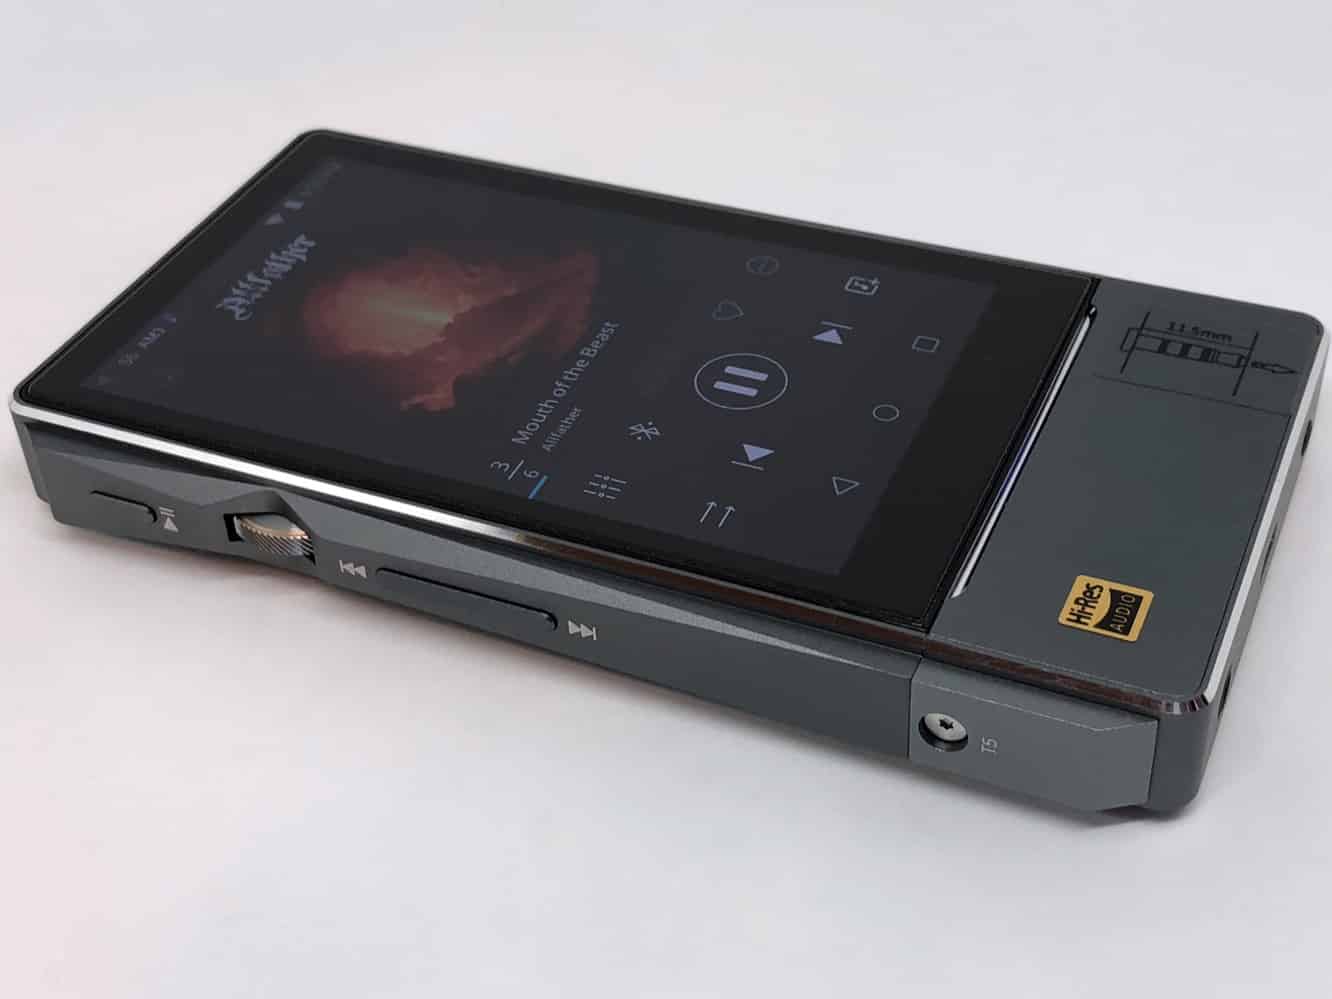 İnceleme: Fiio X7 Mark II Dijital Ses Oynatıcı